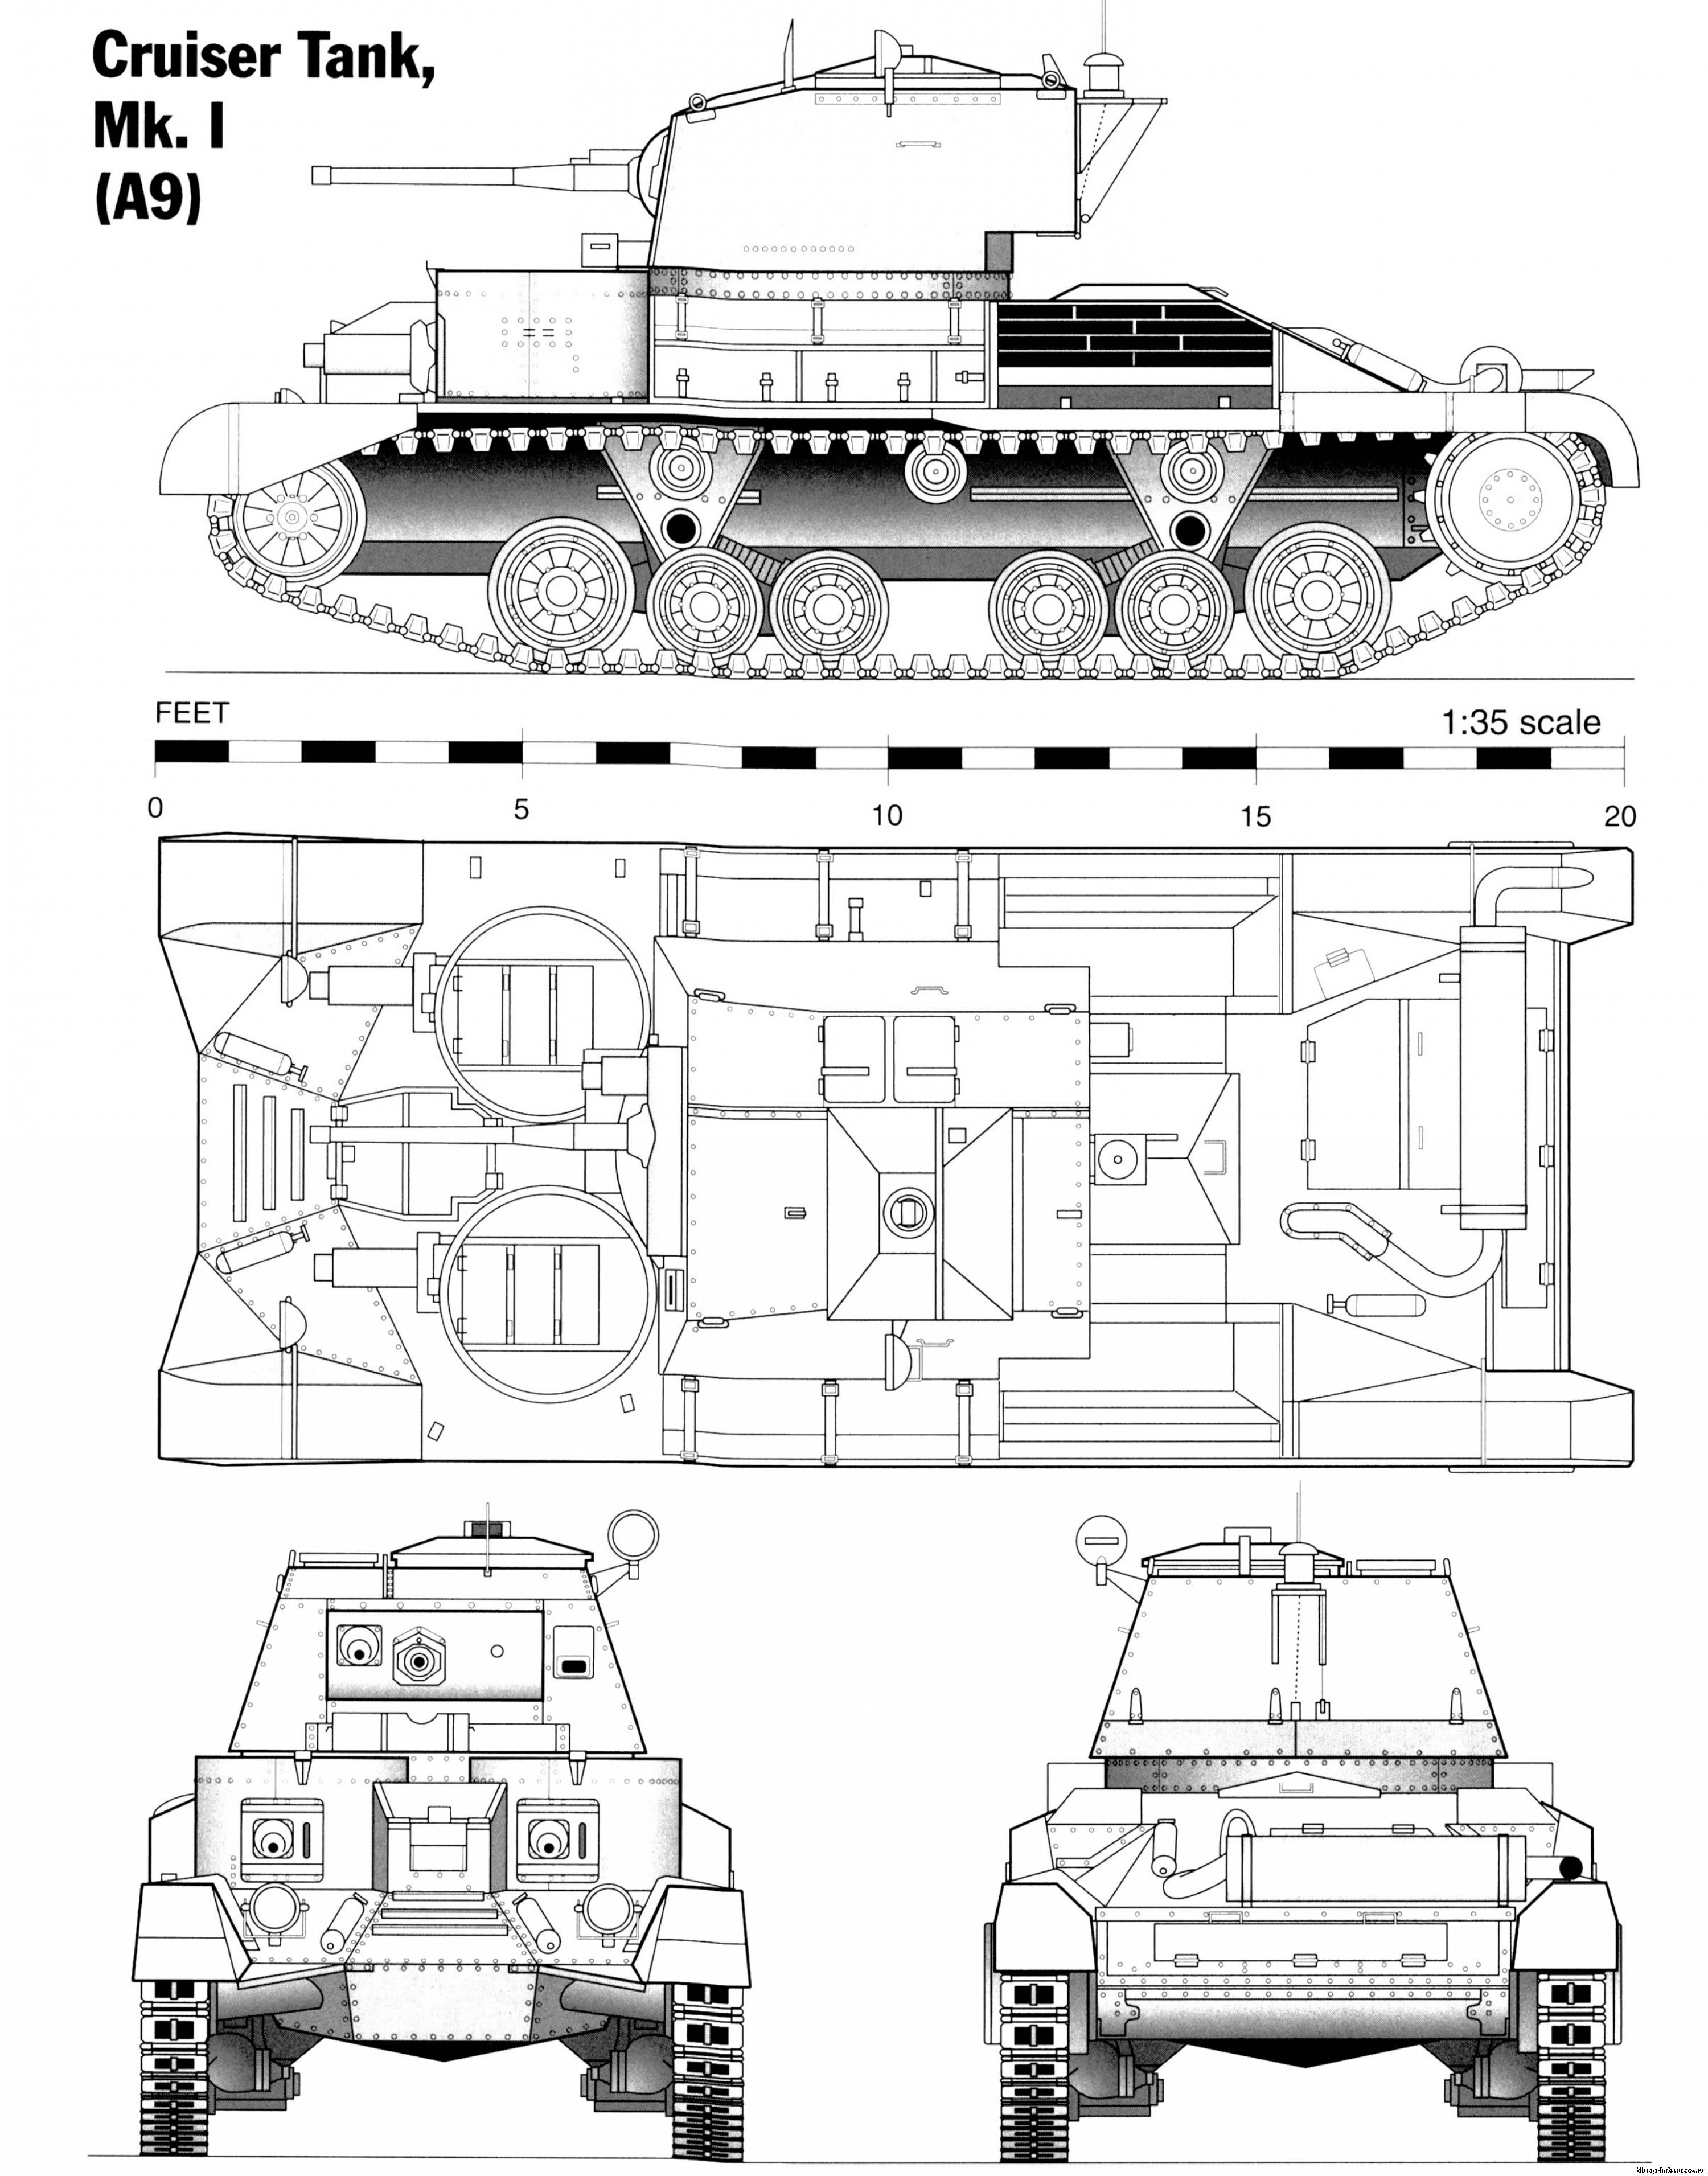 Cruiser tank blueprint